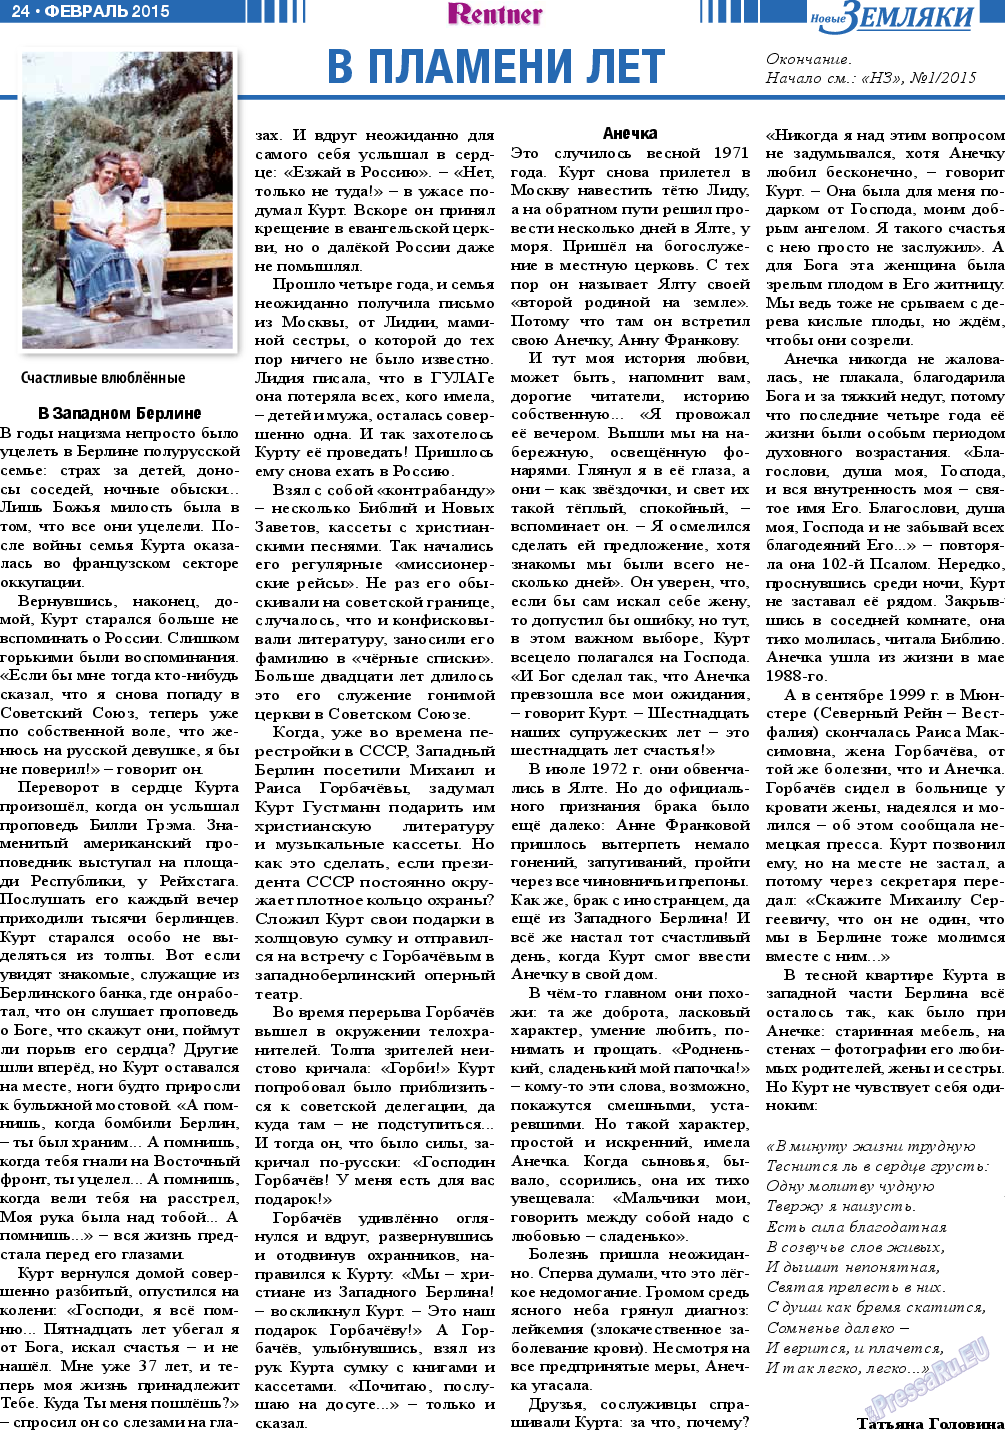 Новые Земляки, газета. 2015 №2 стр.24